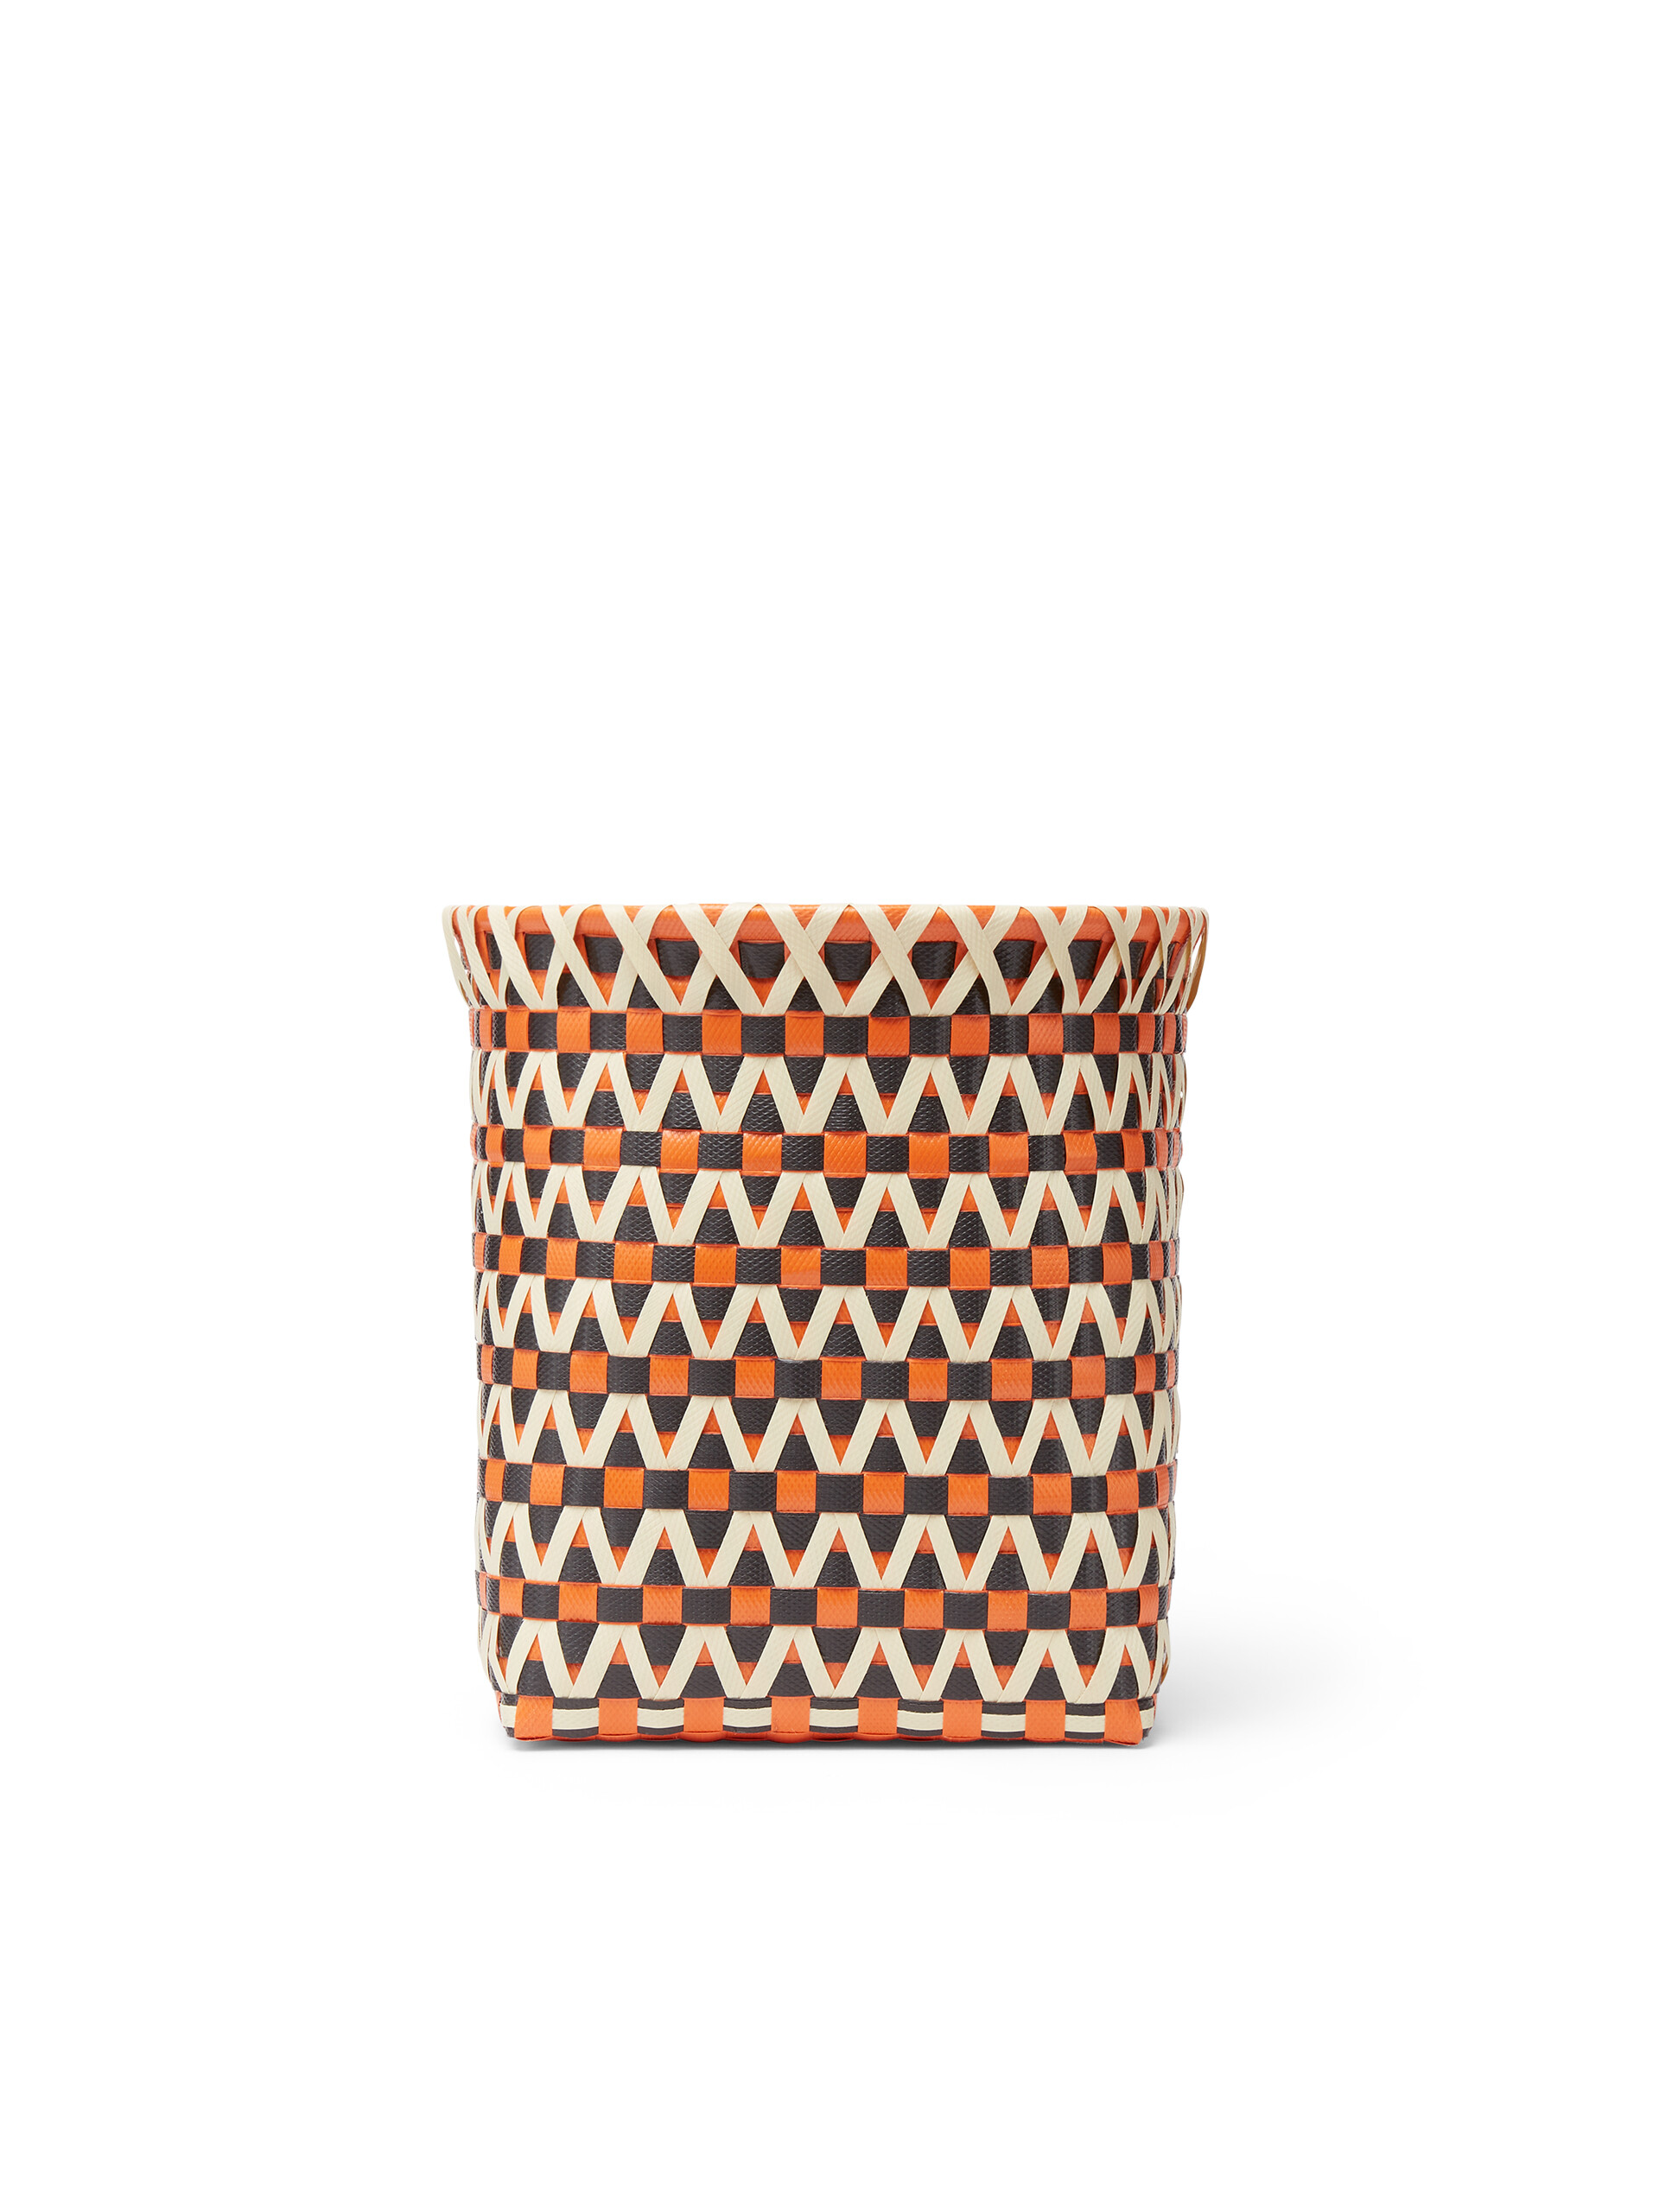 Cestino MARNI MARKET in PVC intrecciato arancio nero e bianco - Home Accessories - Image 3